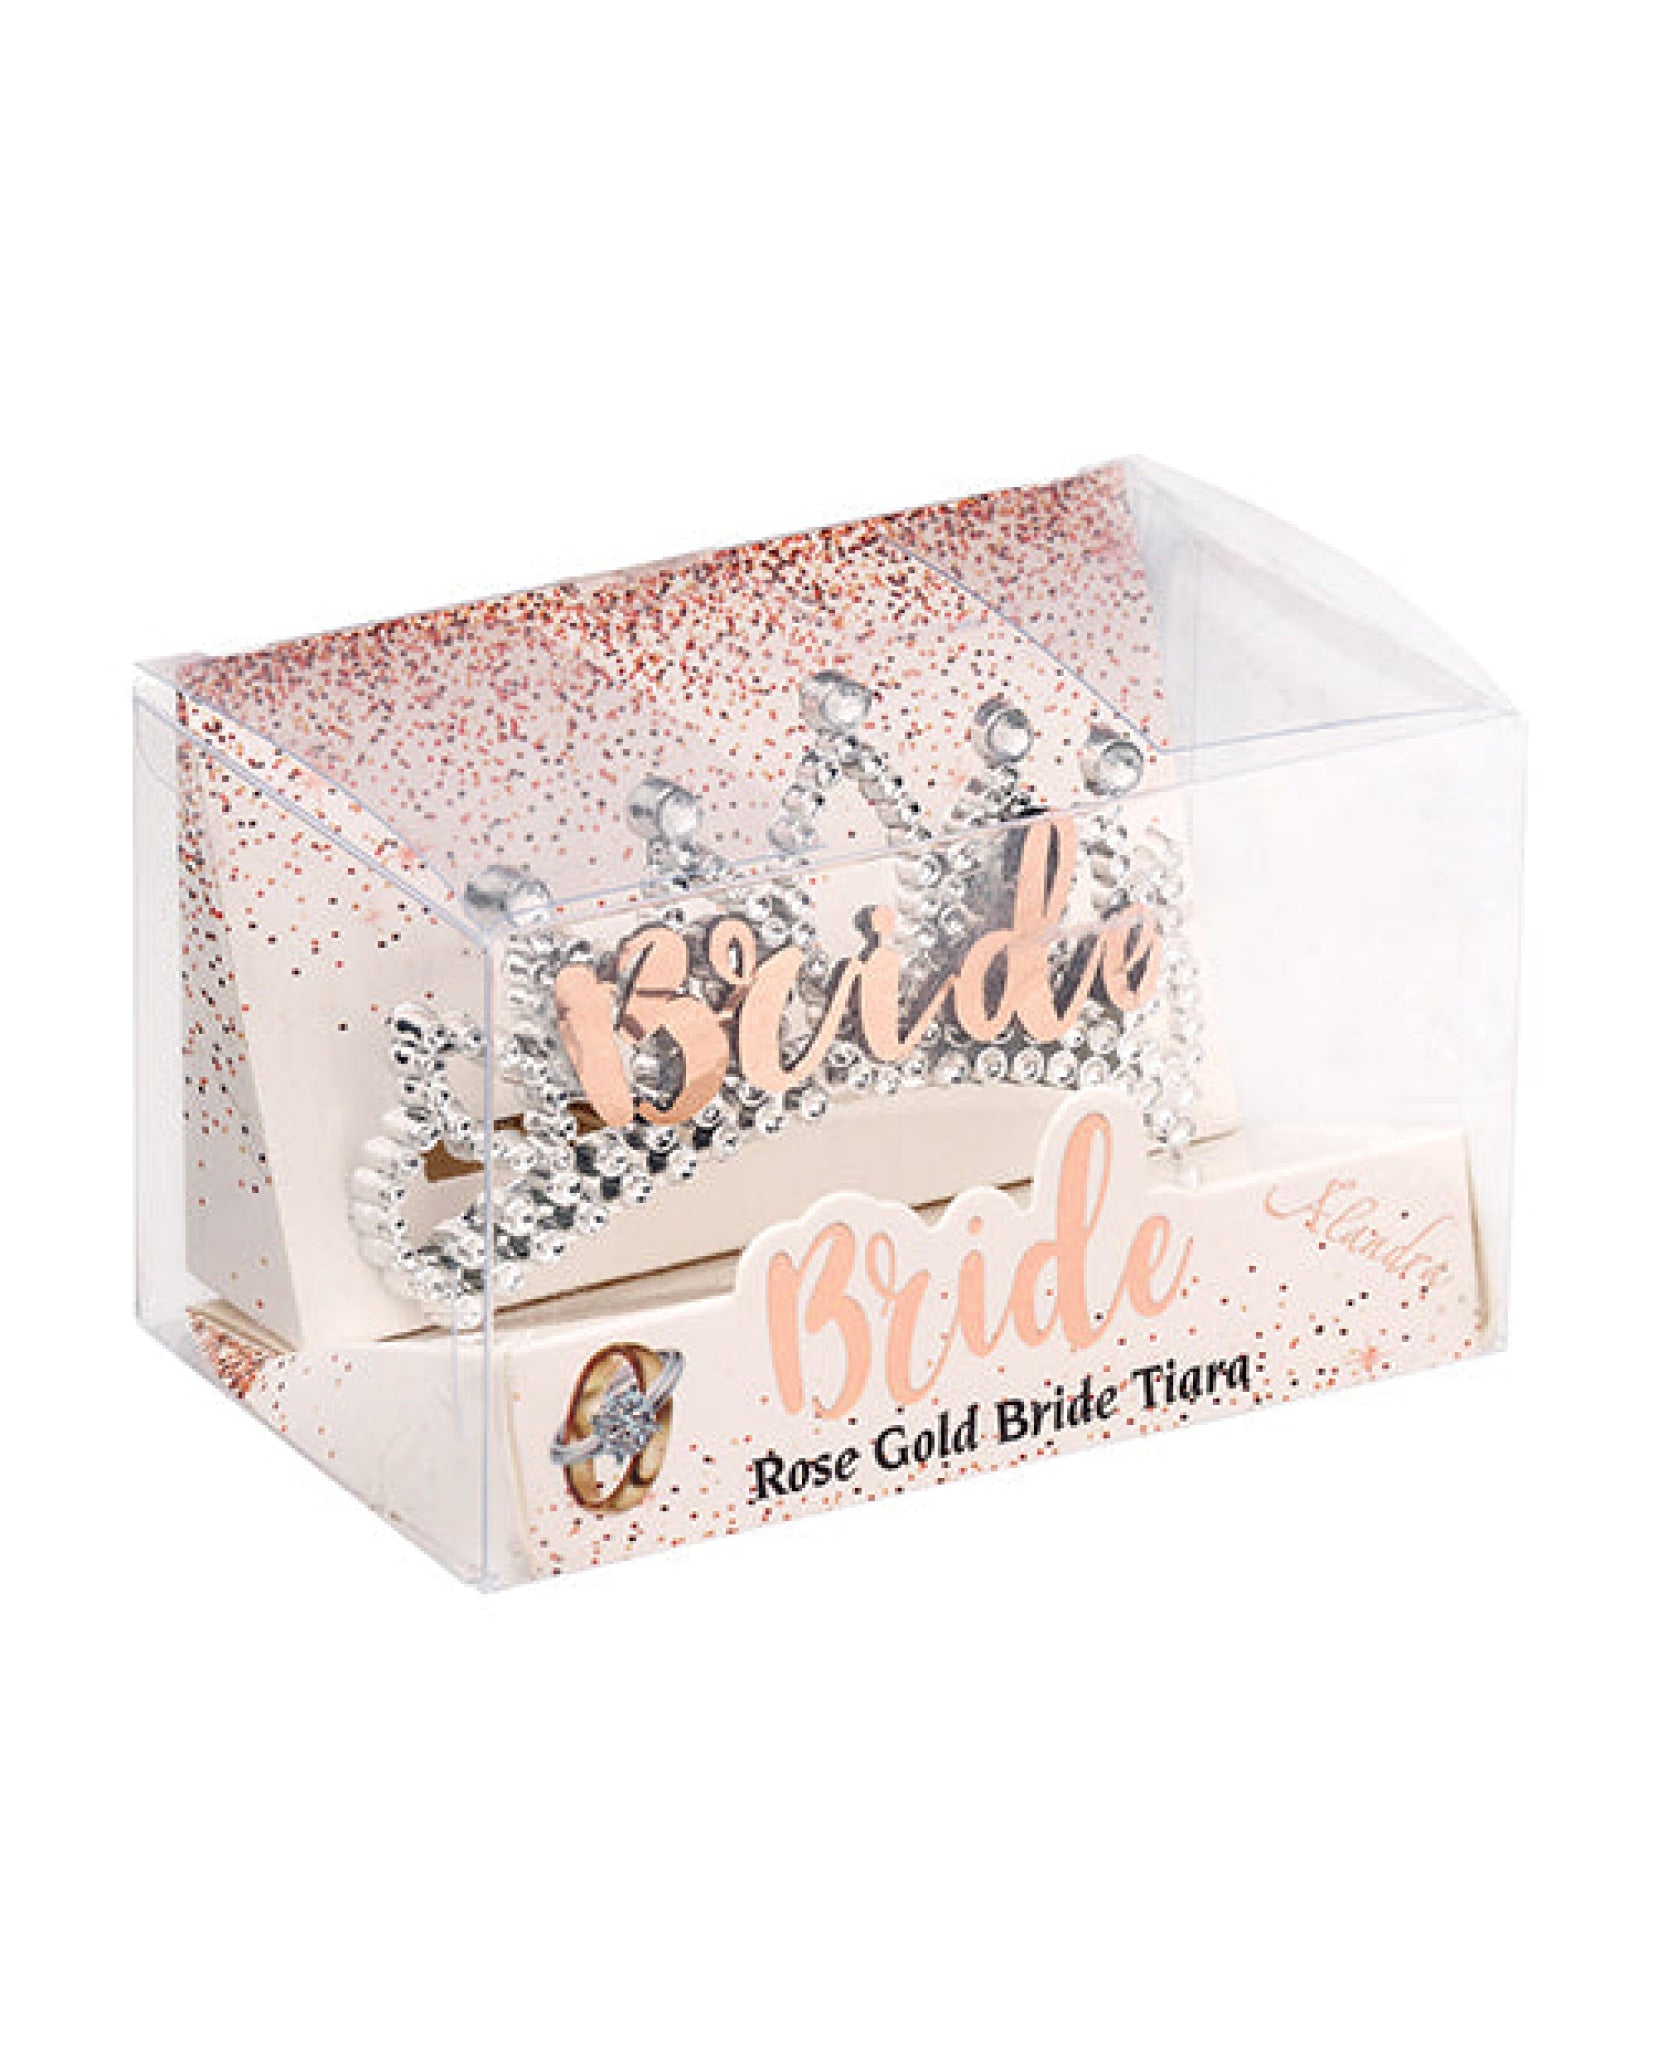 Bride Tiara - Rose Gold Omg International